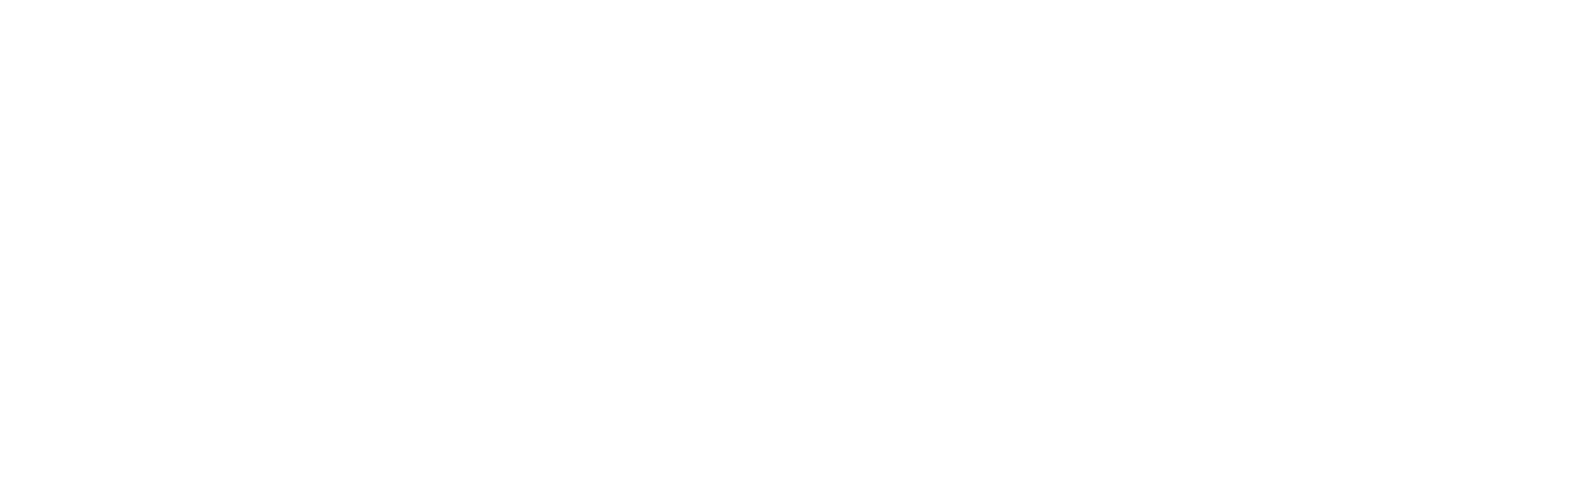 SMART Global Holdings logo large for dark backgrounds (transparent PNG)